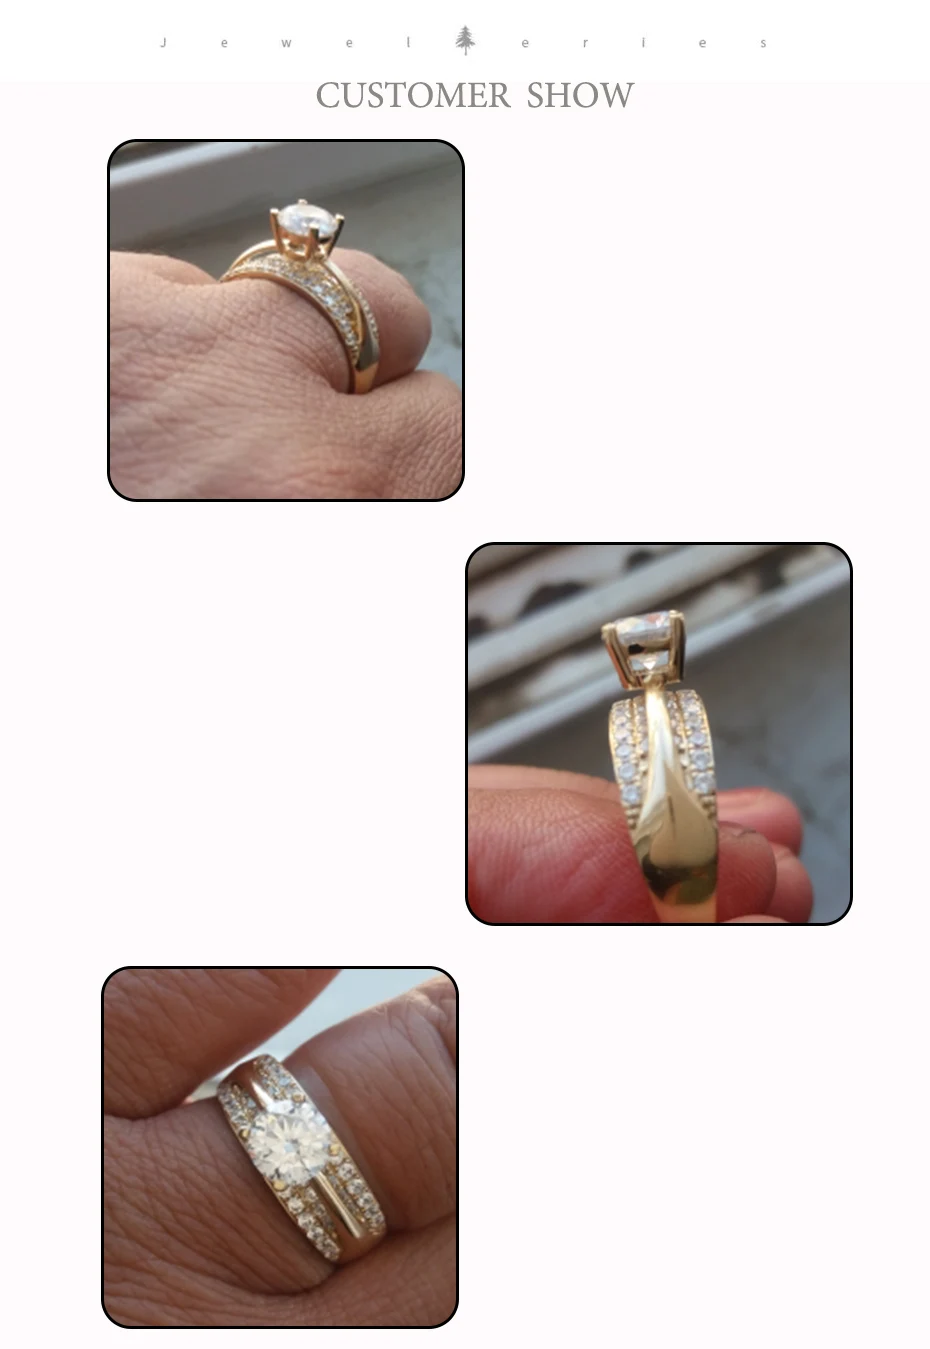 Kuolit 10 к 14 к желтое золото натуральный муассанит драгоценный камень кольца для женщин кольца ручной работы обручальные невесты подарок хорошее ювелирное изделие